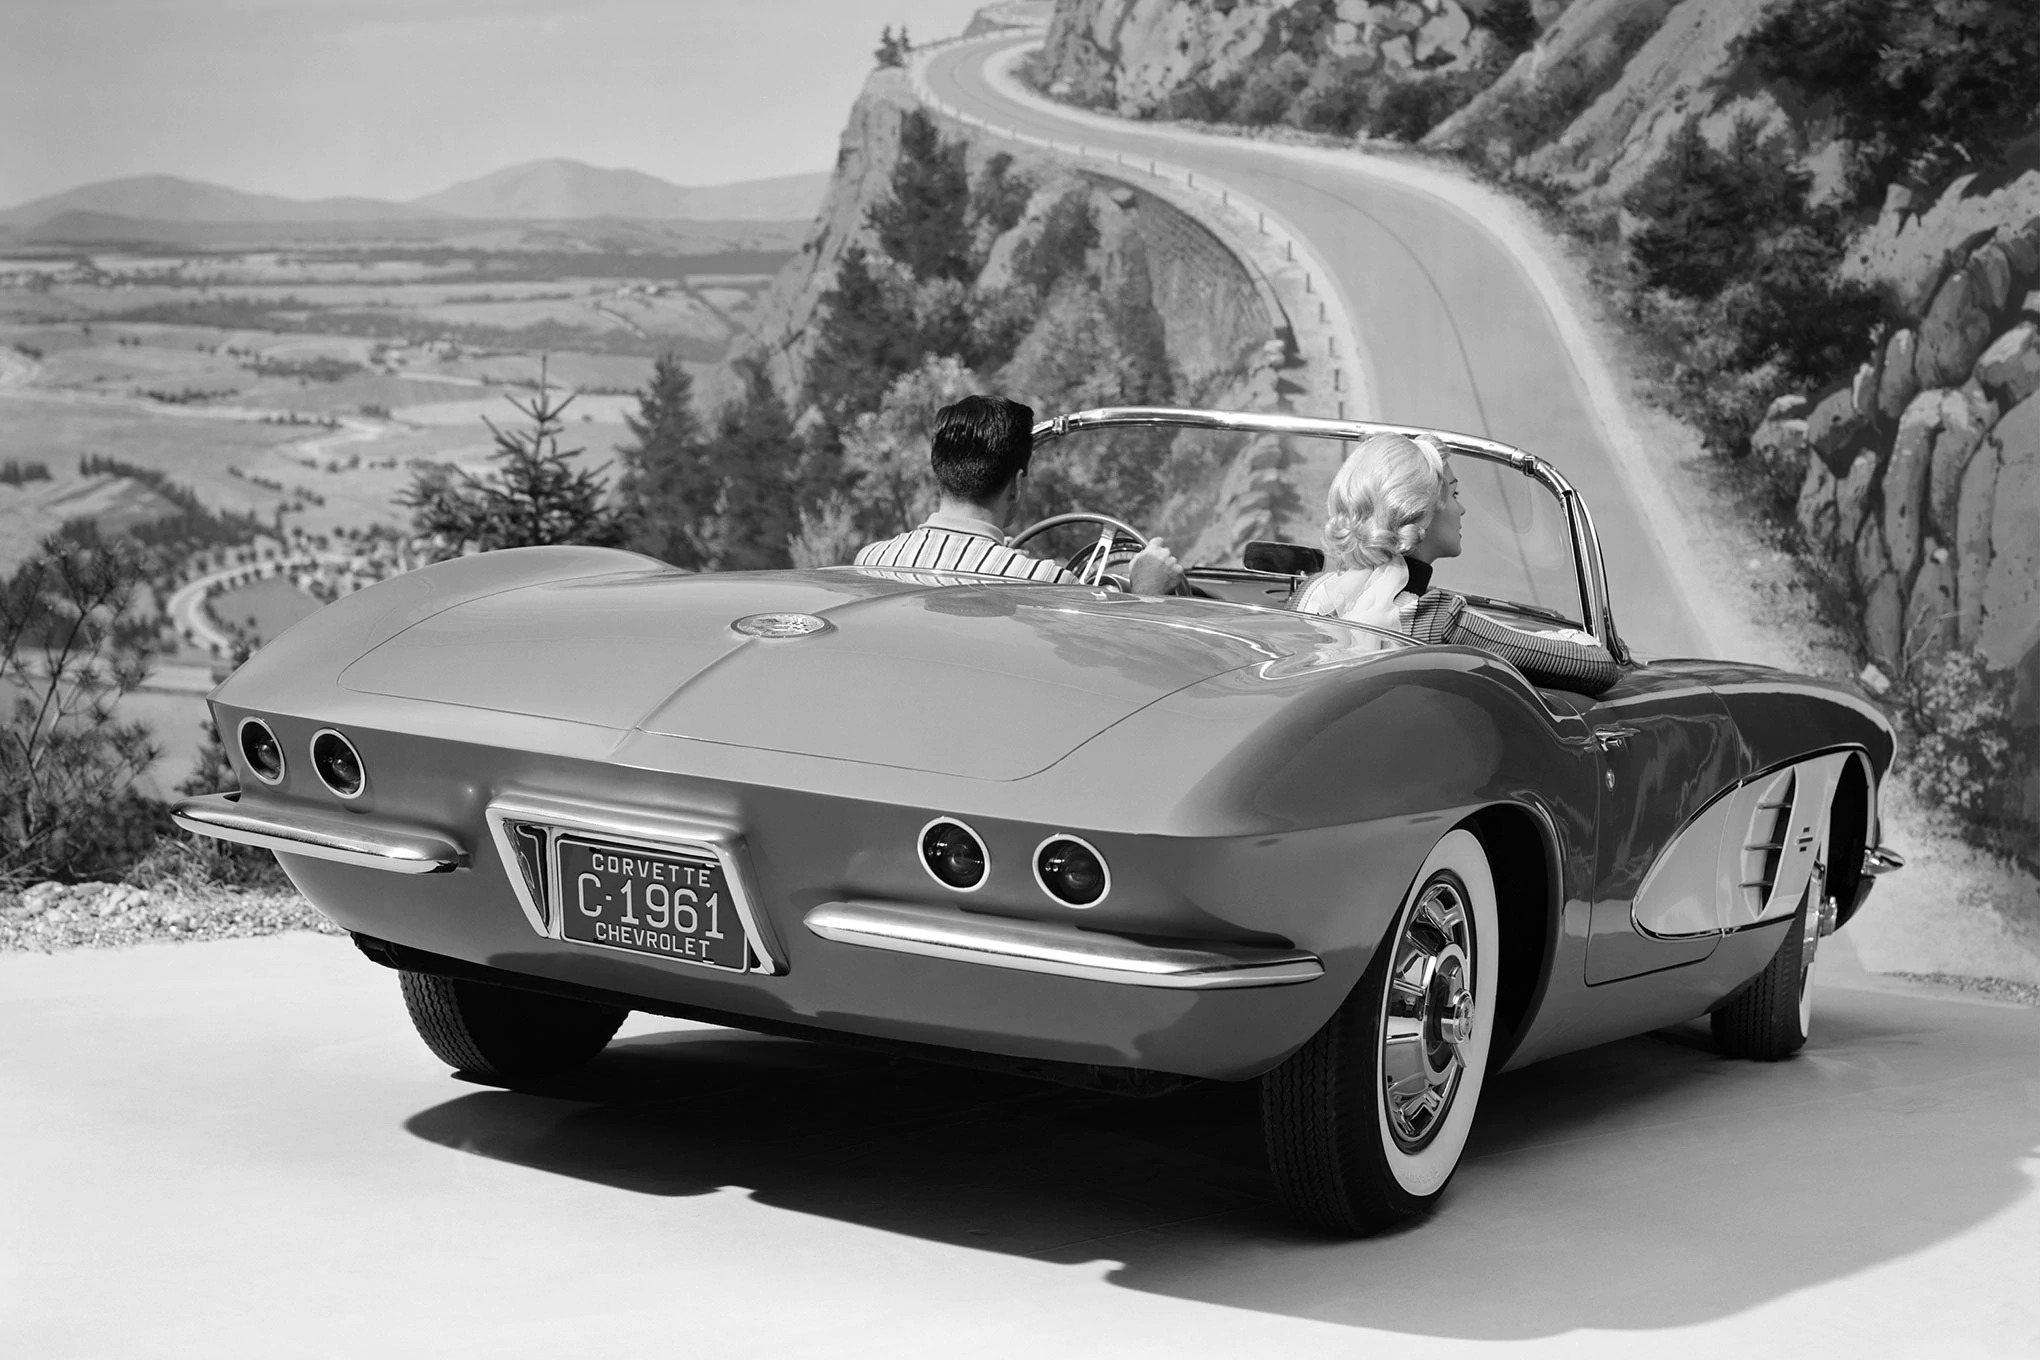 Chevrolet Corvette C1, 1961